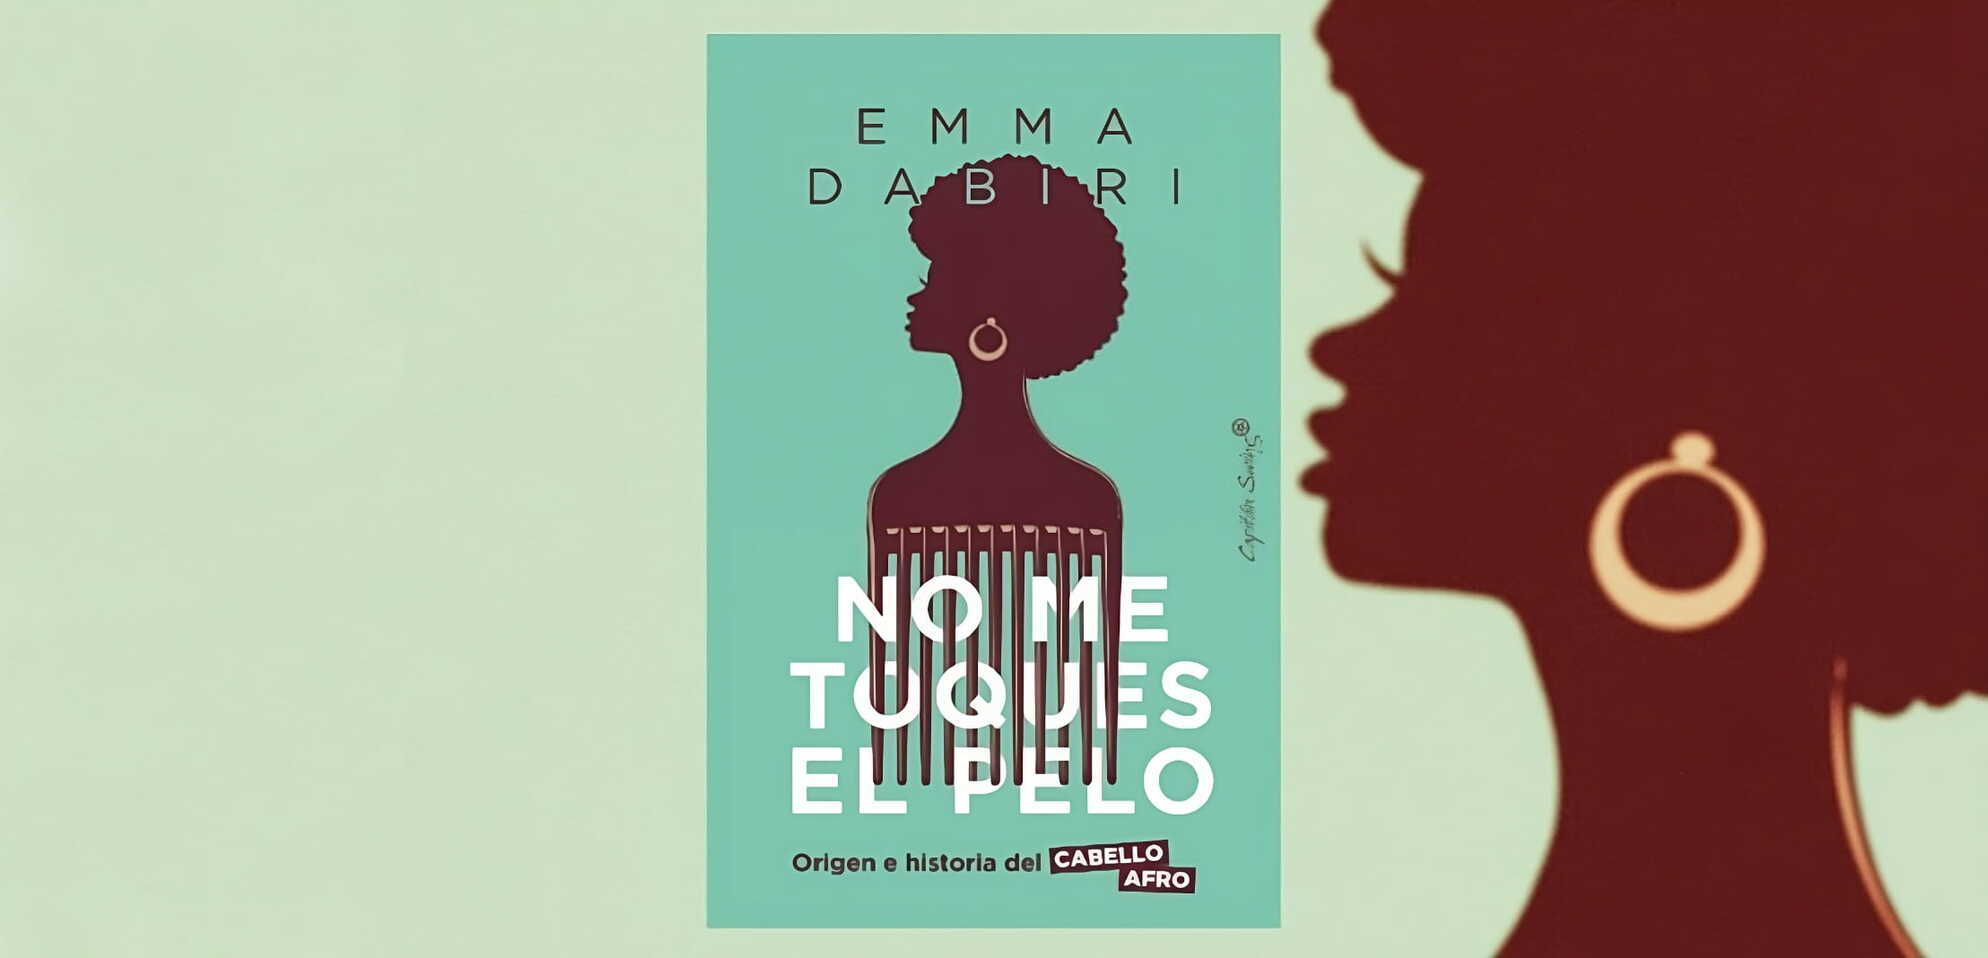 Portada del libro "No me toques el pelo", de Emma Dabiri. (Capitan Swing).